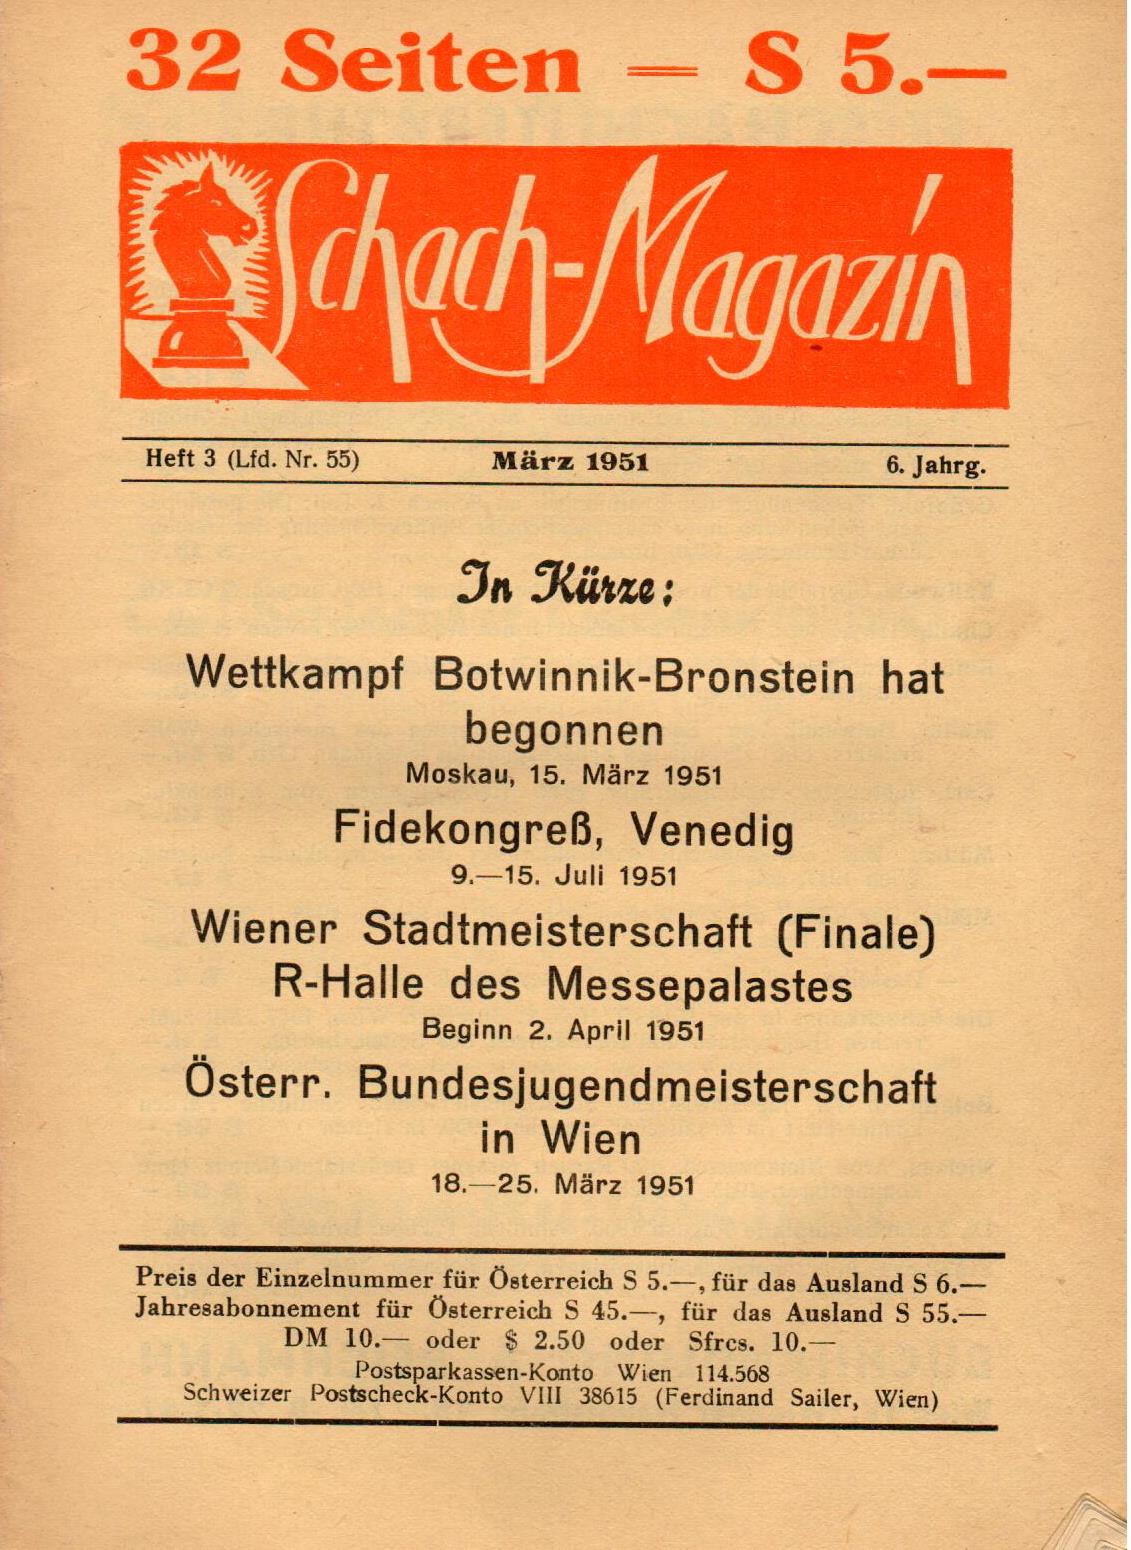 SCHACH-MAGAZIN / 1951 vol 6, no 3